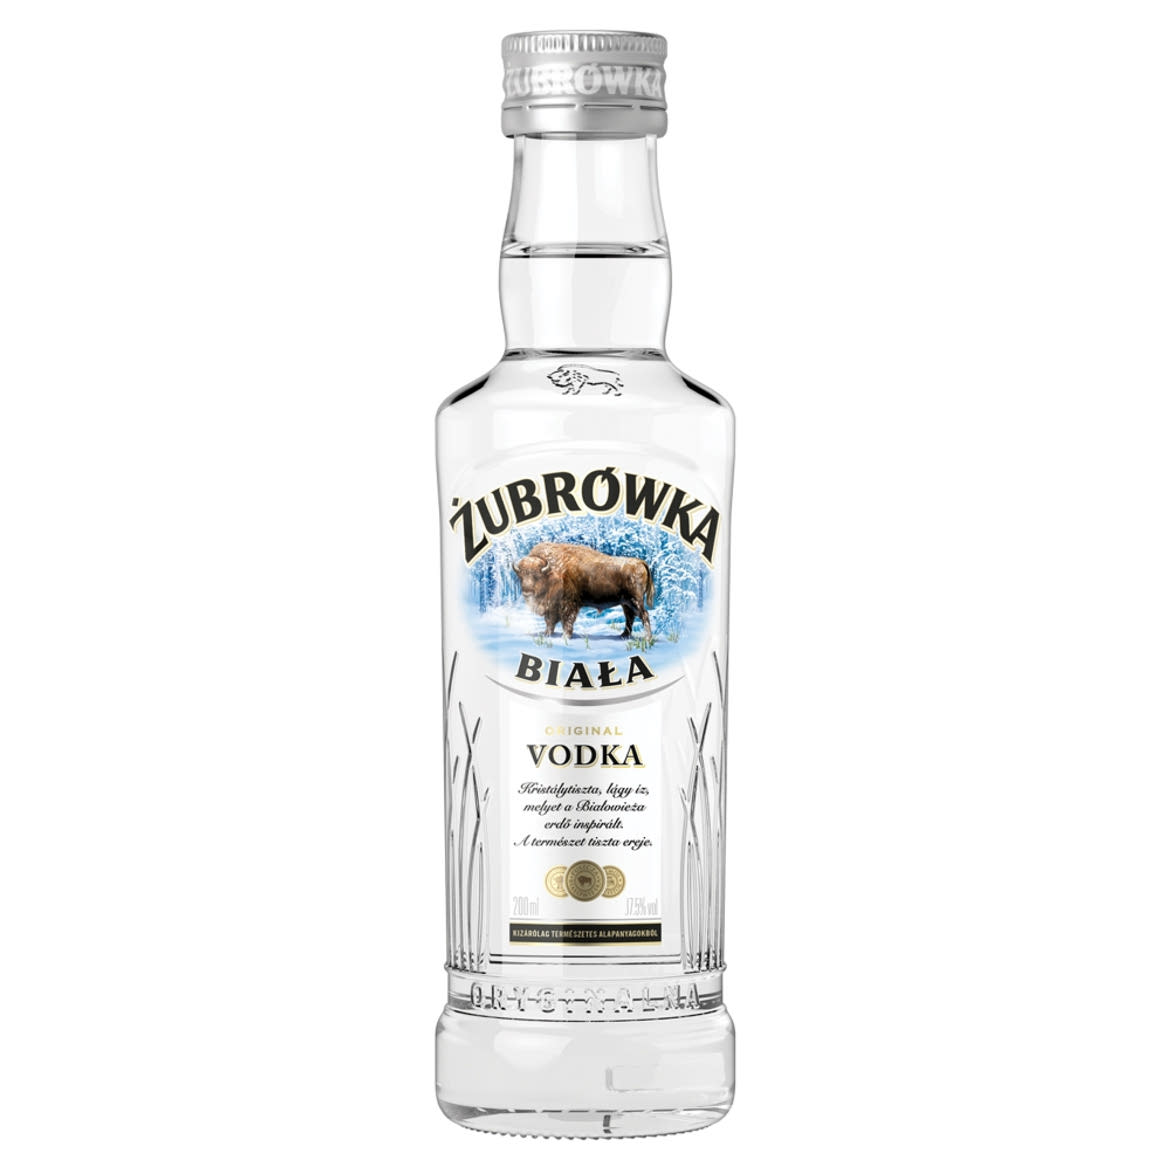 Zubrówka Biala vodka 37,5%